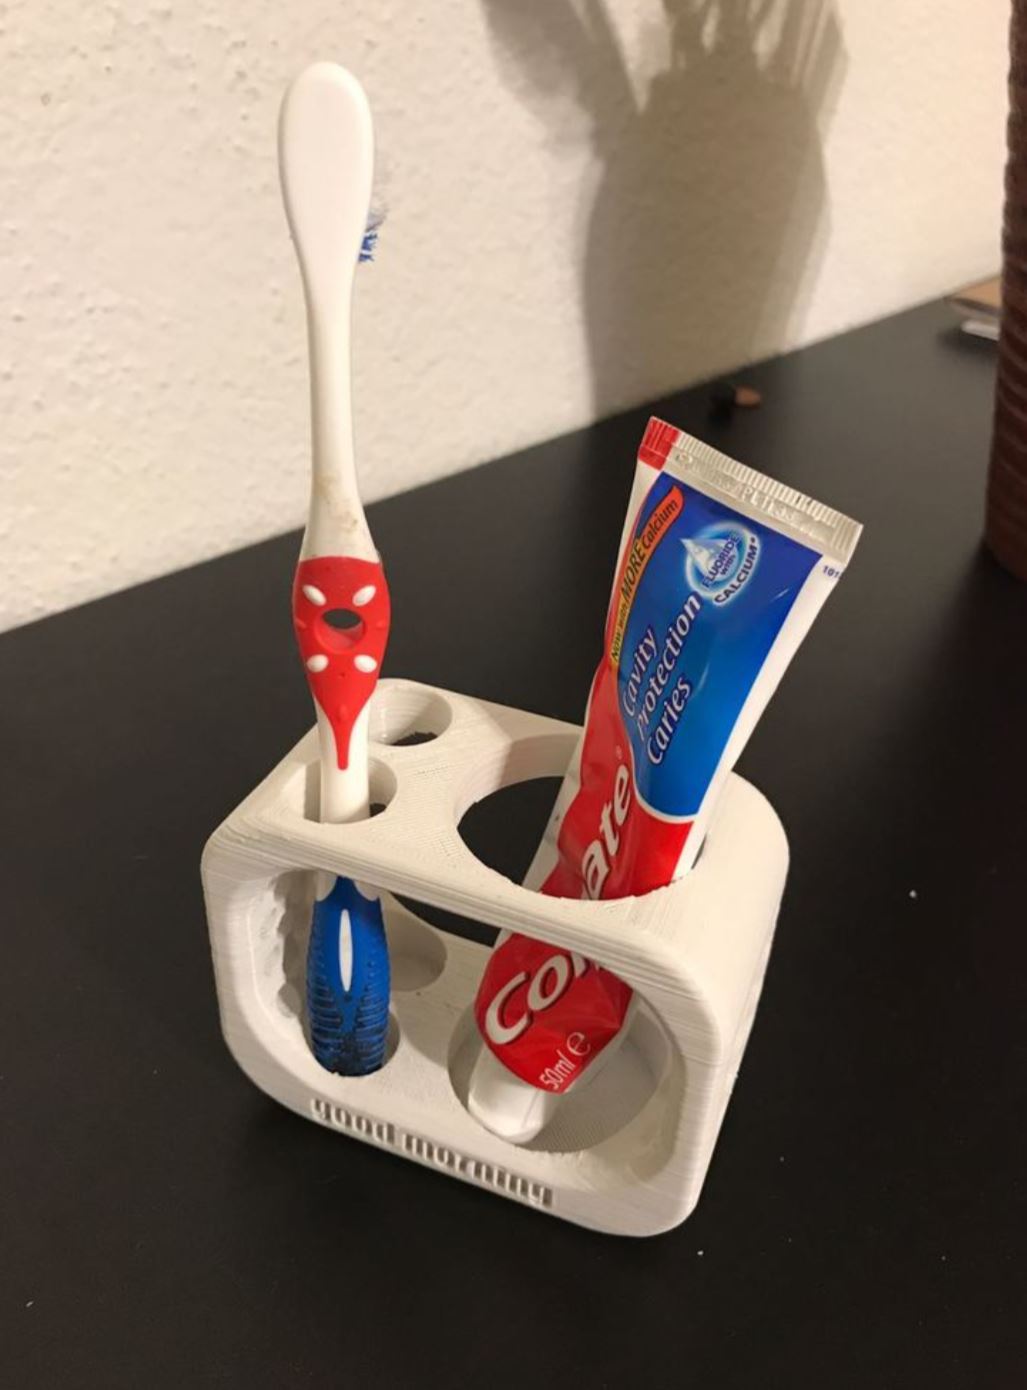 Tandborste och tandkrämshållare för två tandborstar